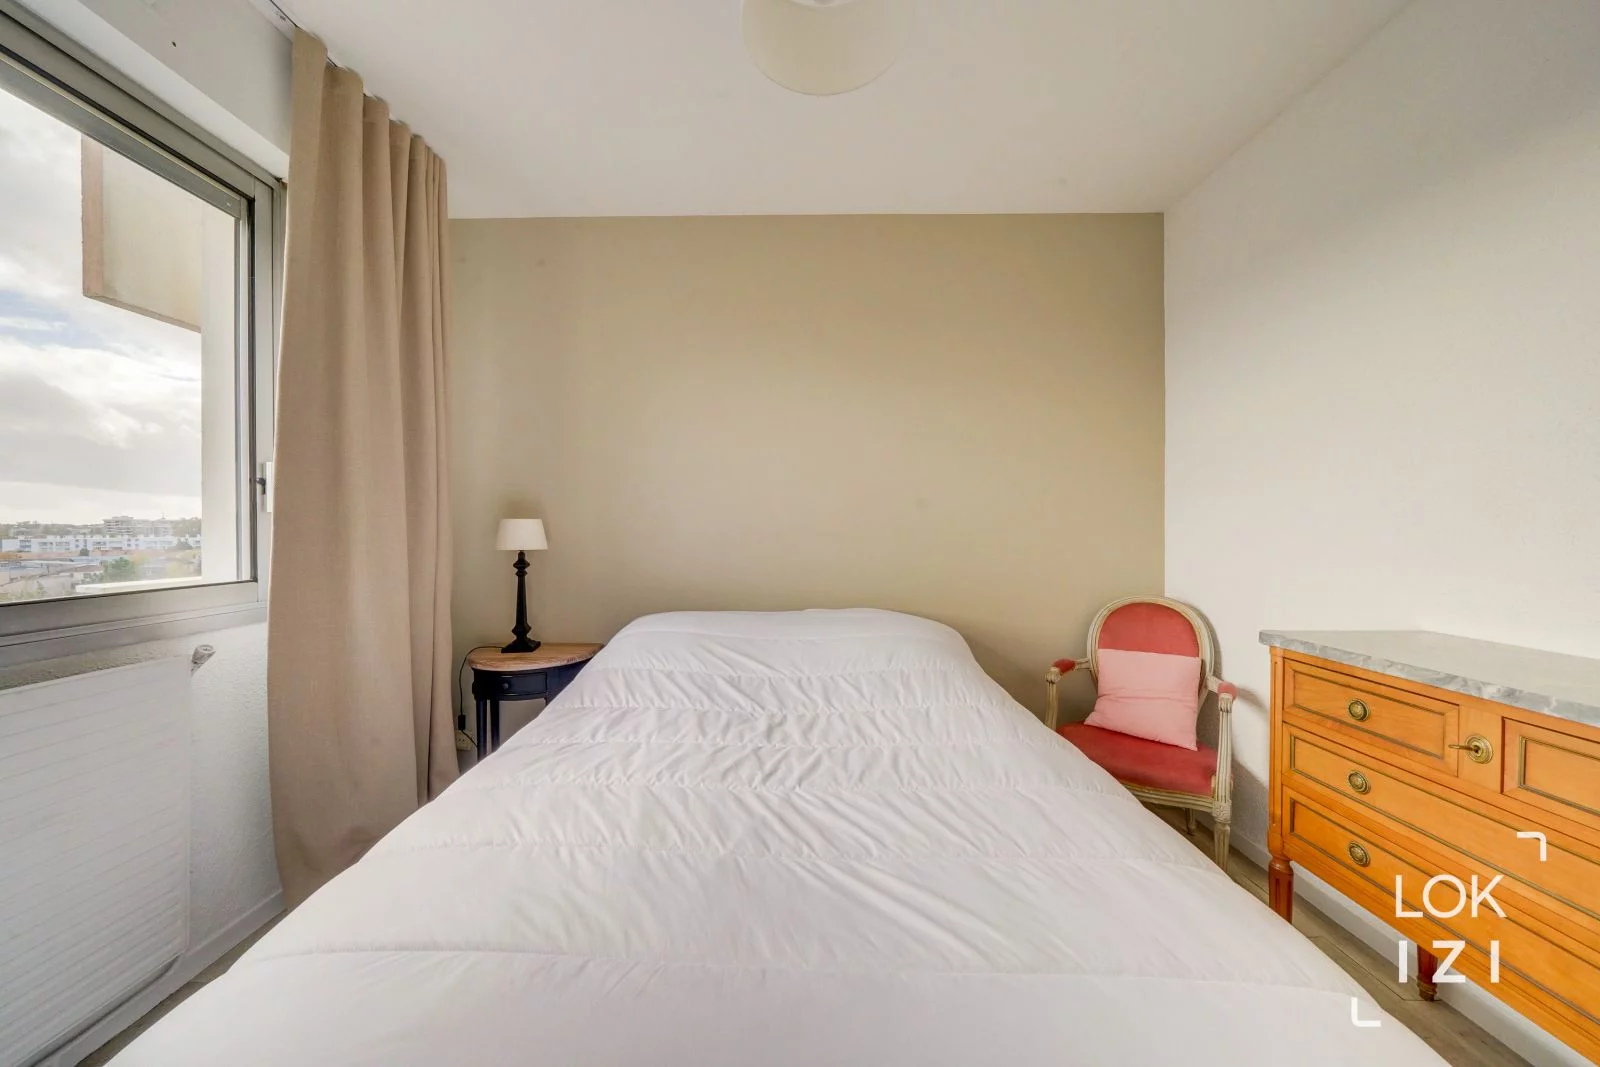 Location appartement meublé 3 pièces 84m² (Bordeaux - Caudéran)